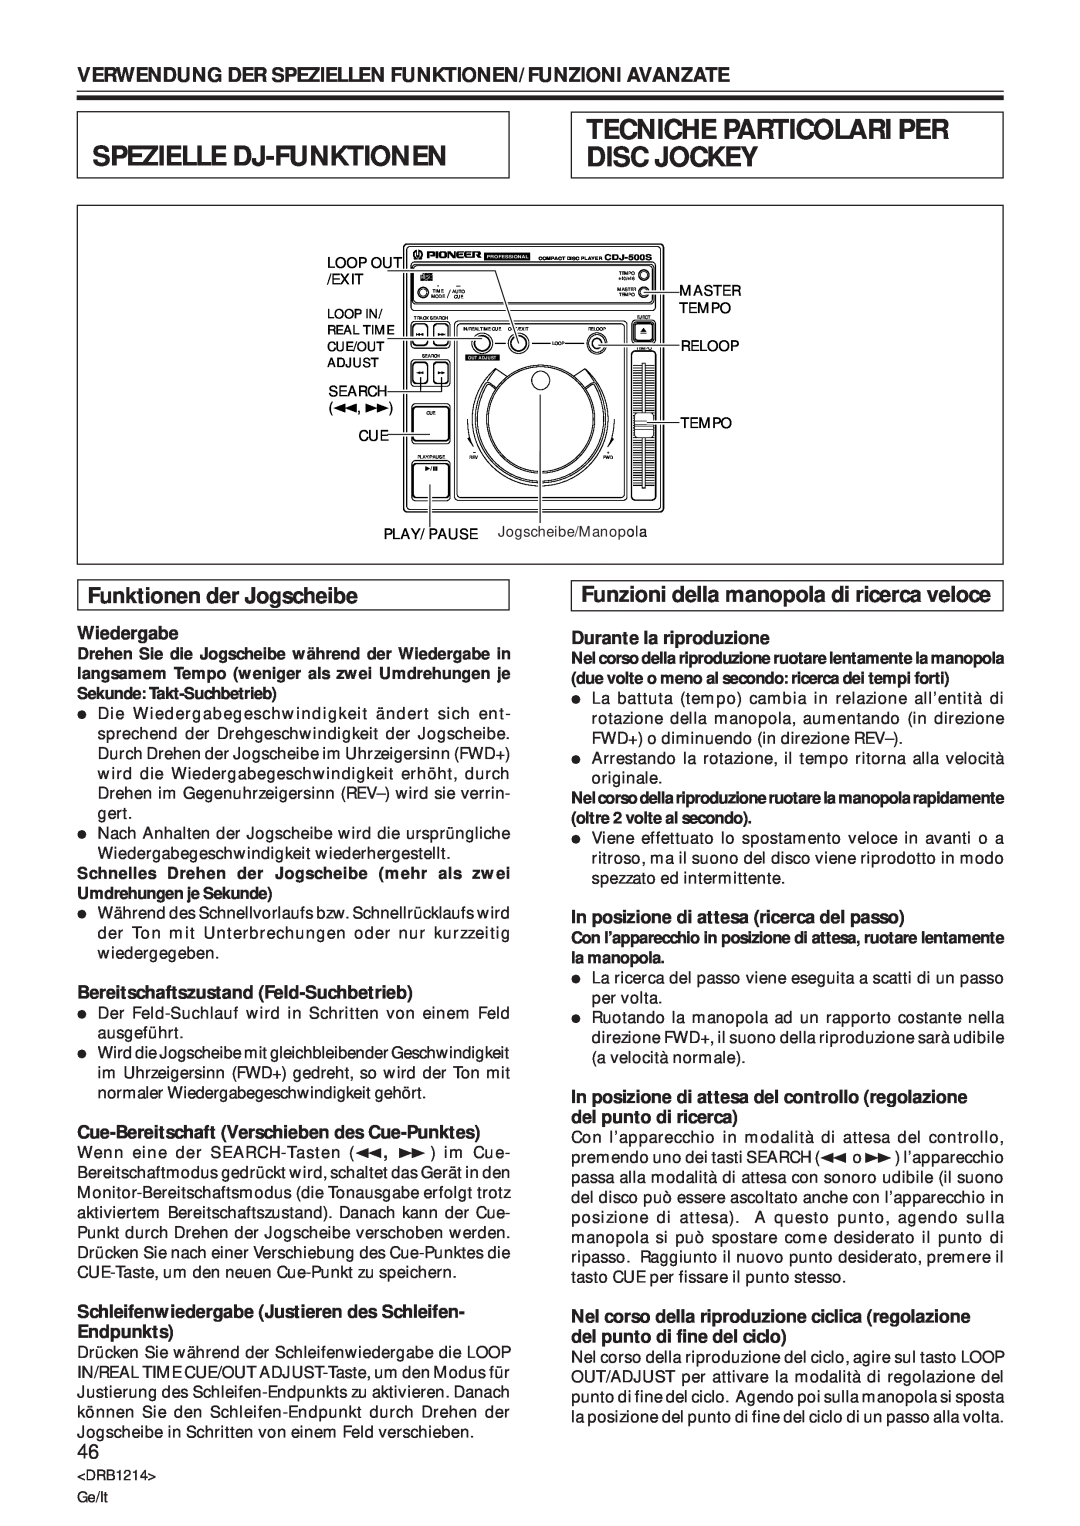 Pioneer CDJ-500S Spezielle Dj-Funktionen, Tecniche Particolari Per Disc Jockey, Funktionen der Jogscheibe, Wiedergabe 